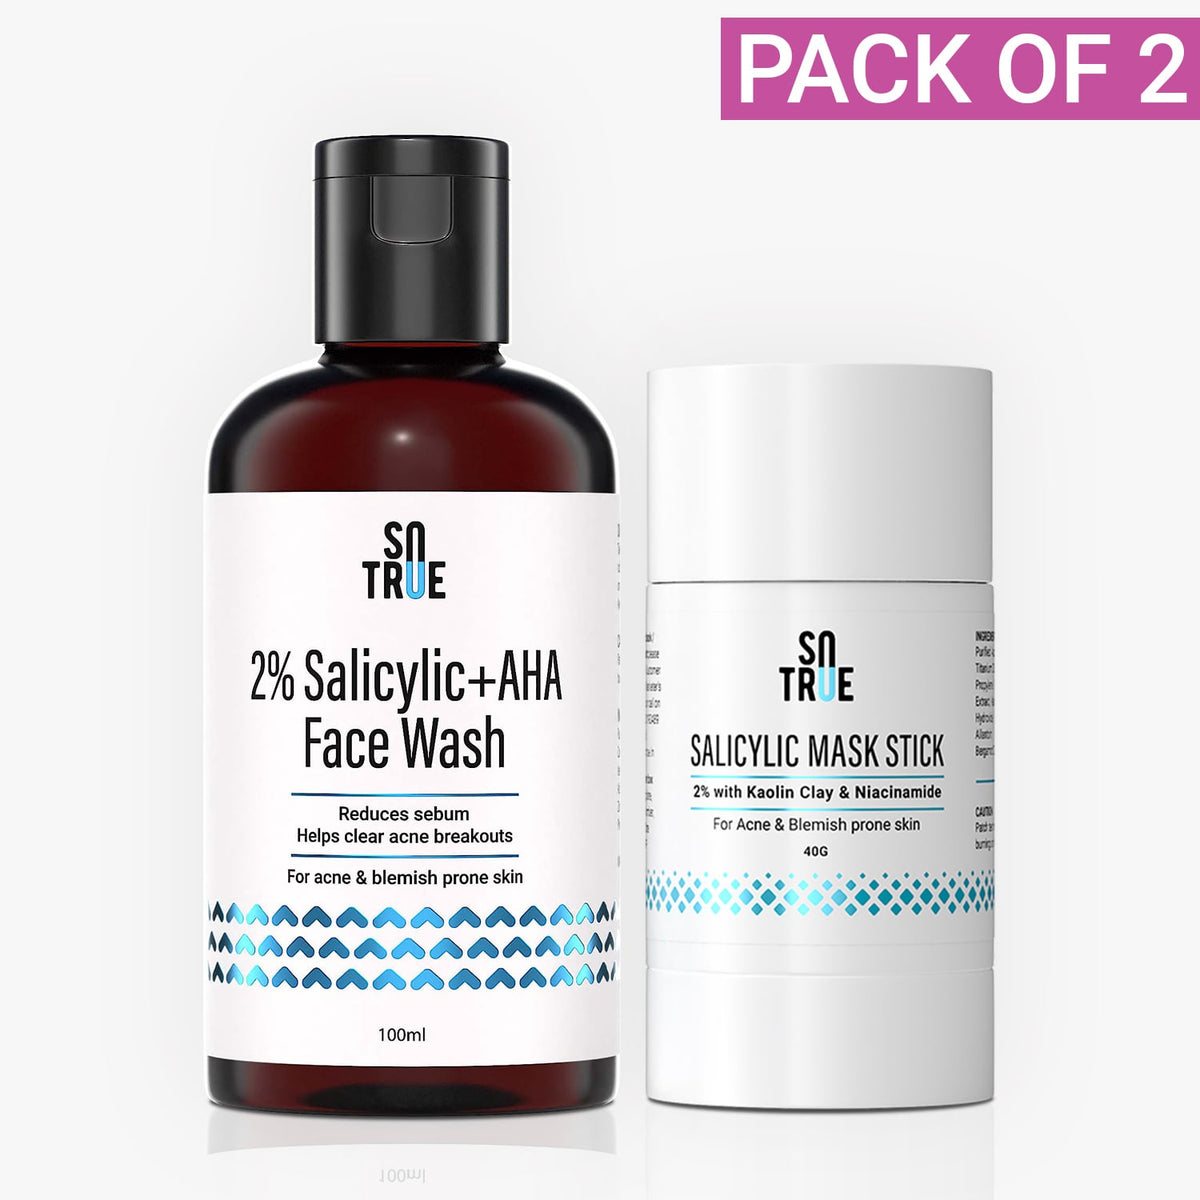 Salicylic Face Care Duo | Salicylic Acid Face Mask Stick & Salicylic + AHA Face Wash